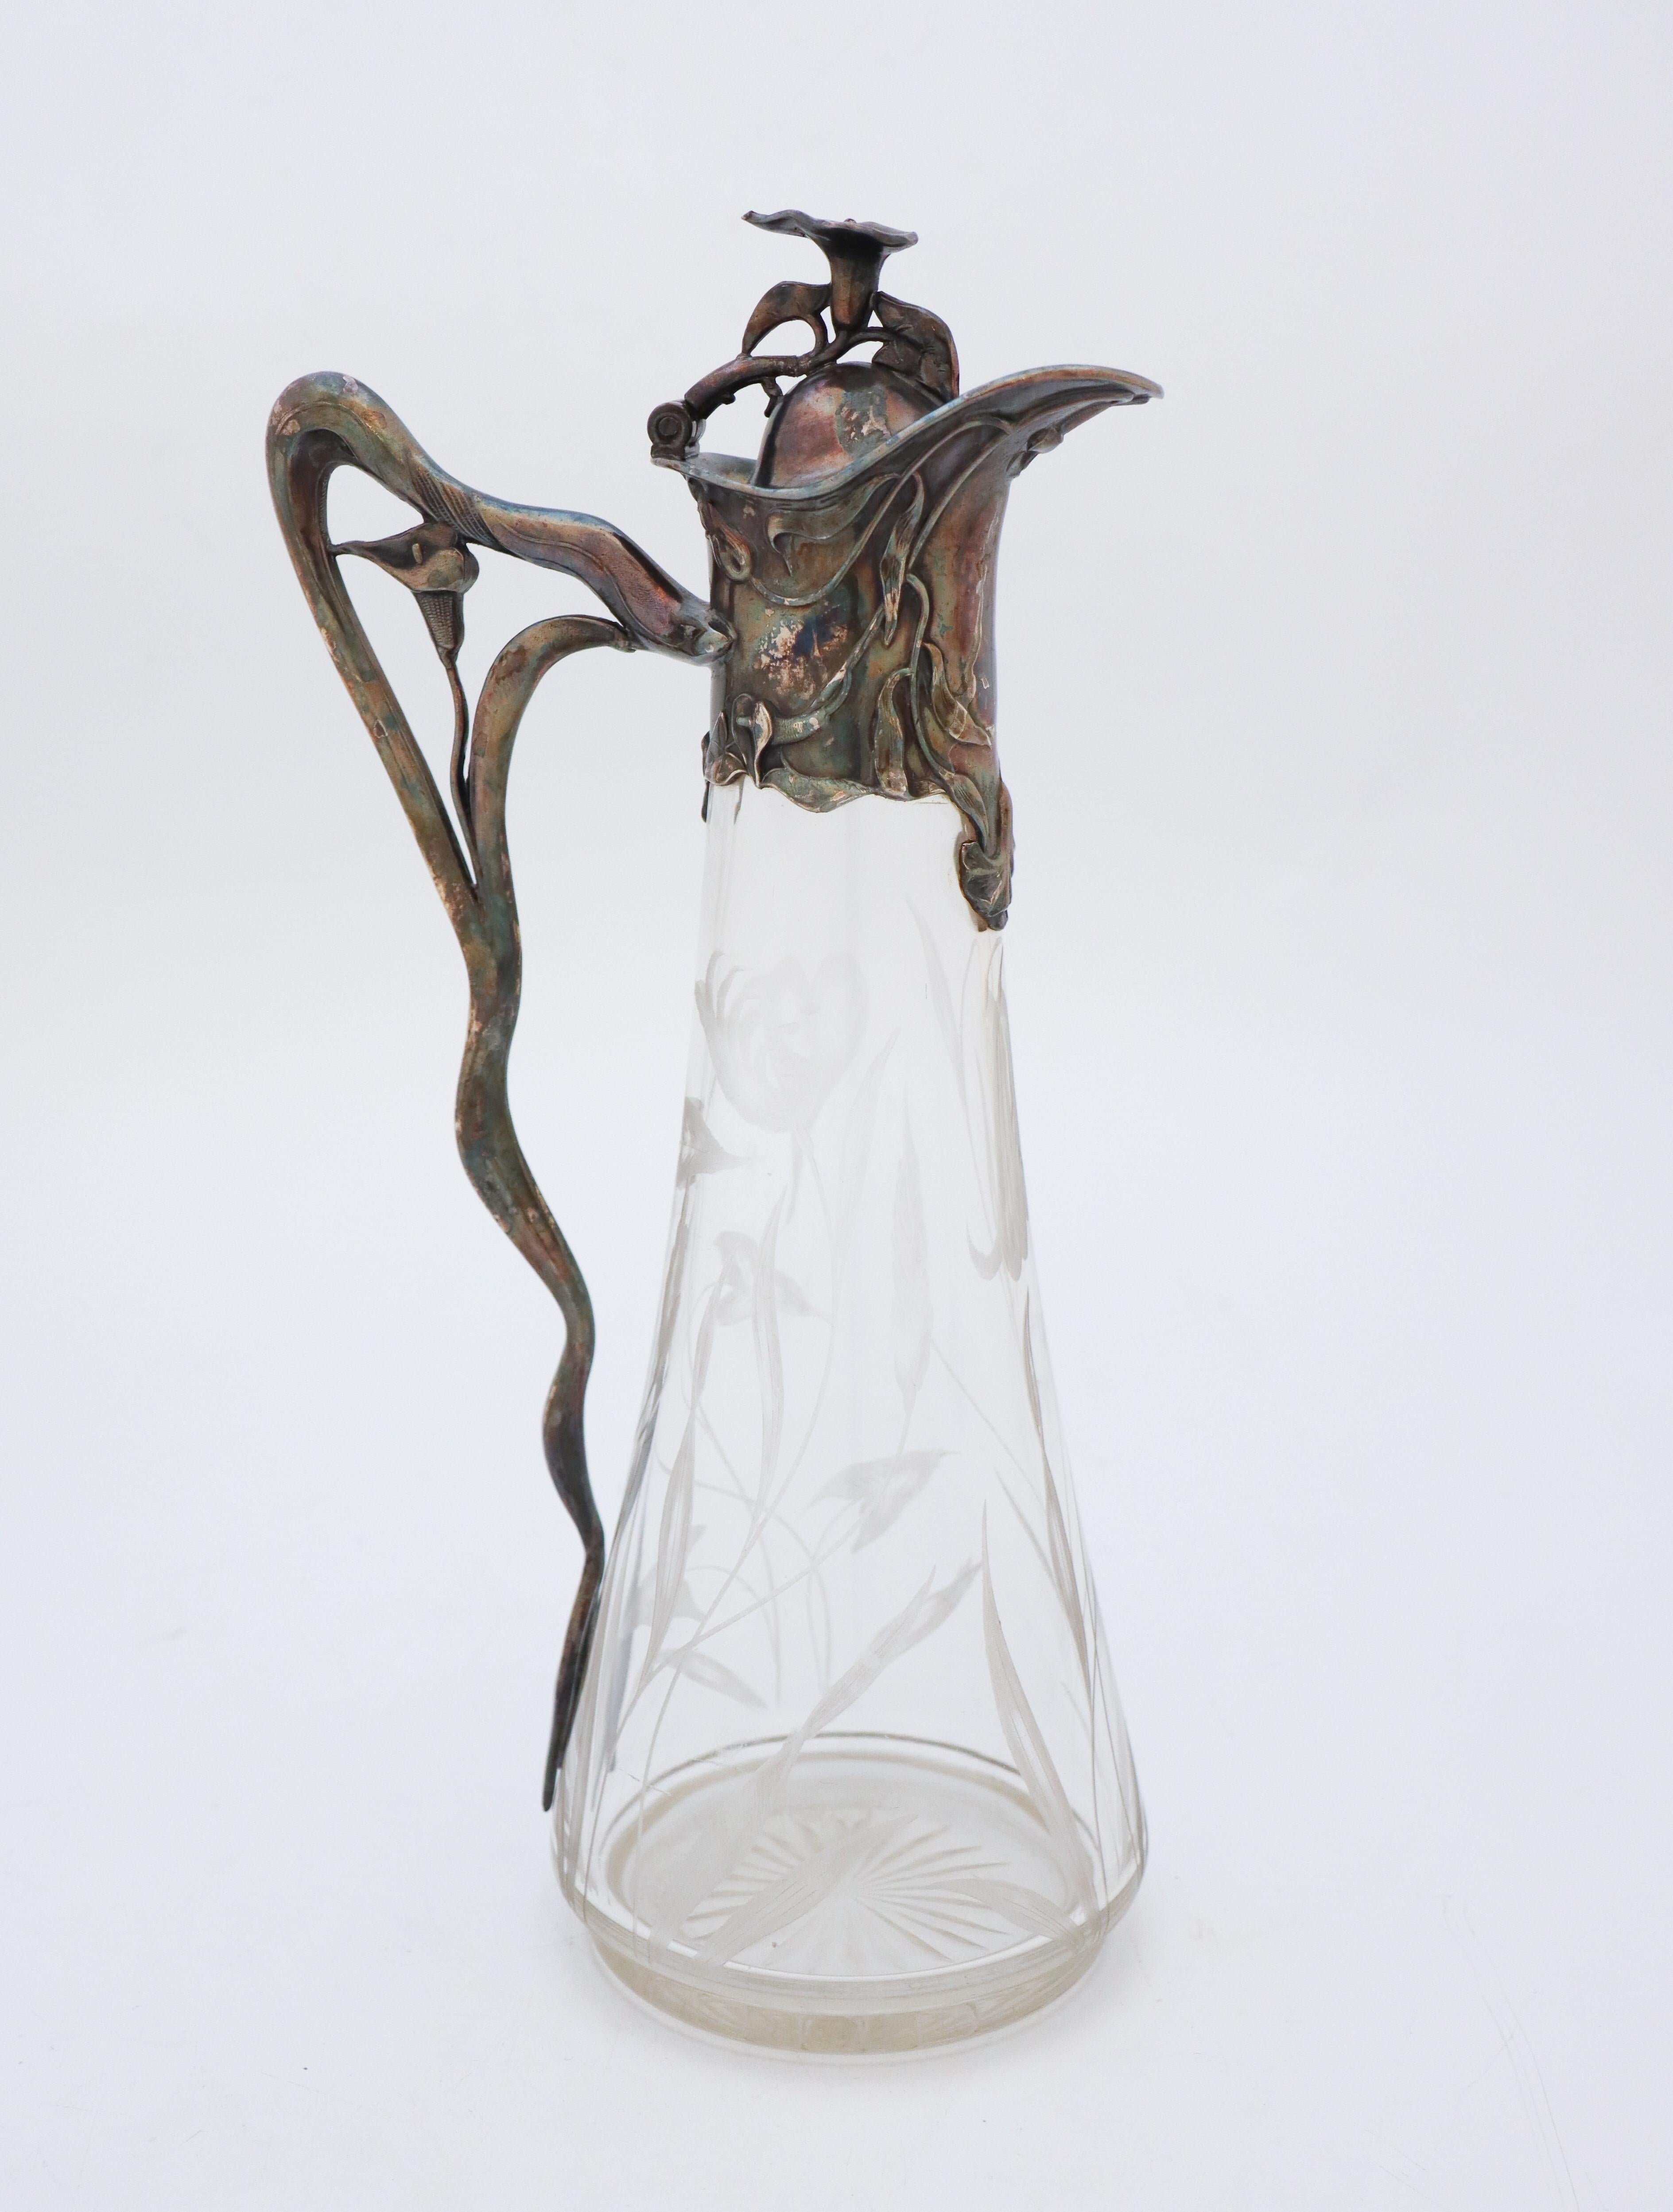 Art Nouveau Decanter, Antique Pitcher, Floral Engraved Glass & Metal, Jugend For Sale 1